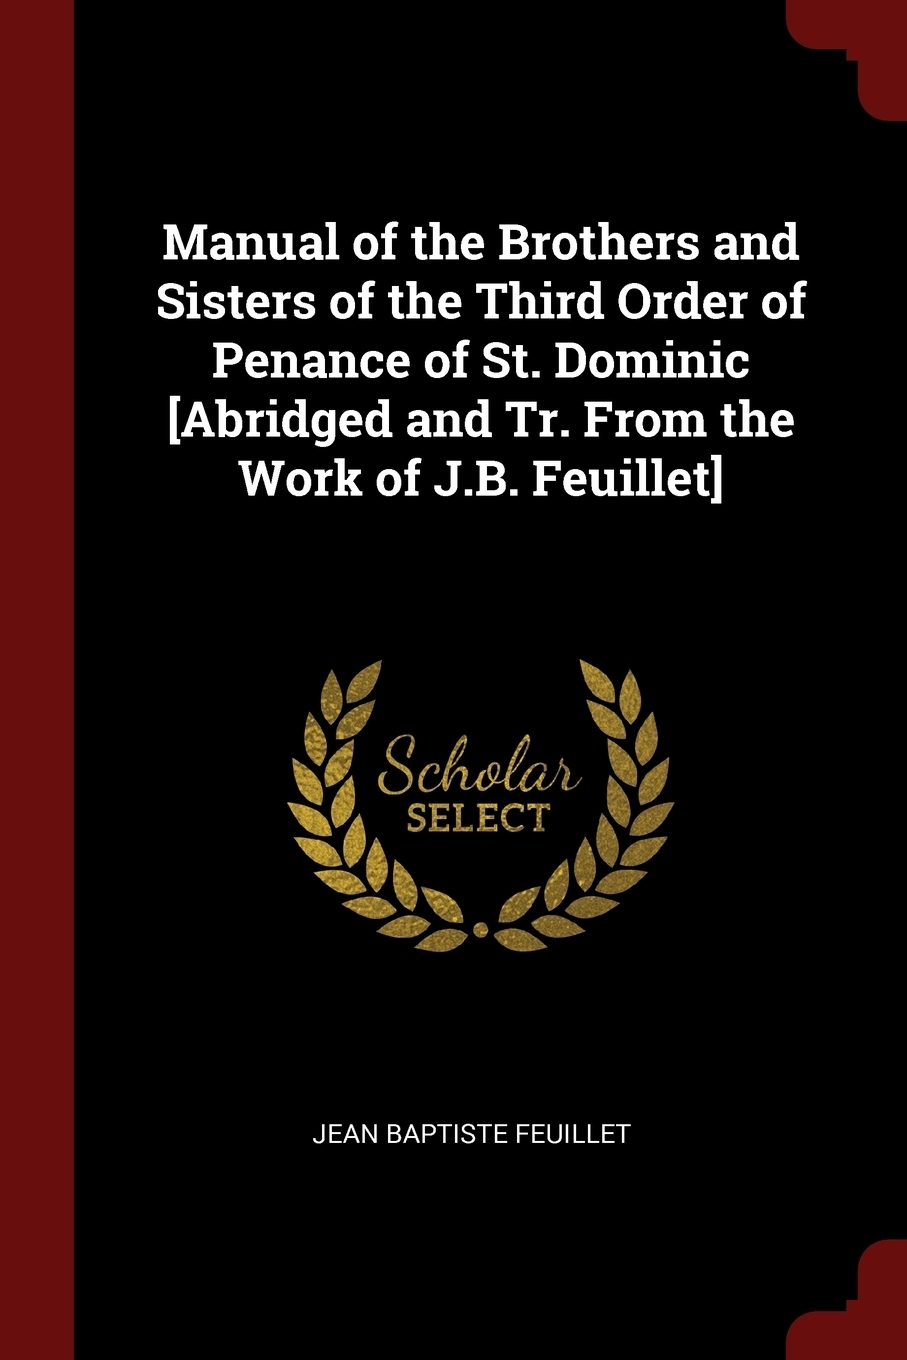 Sisters order